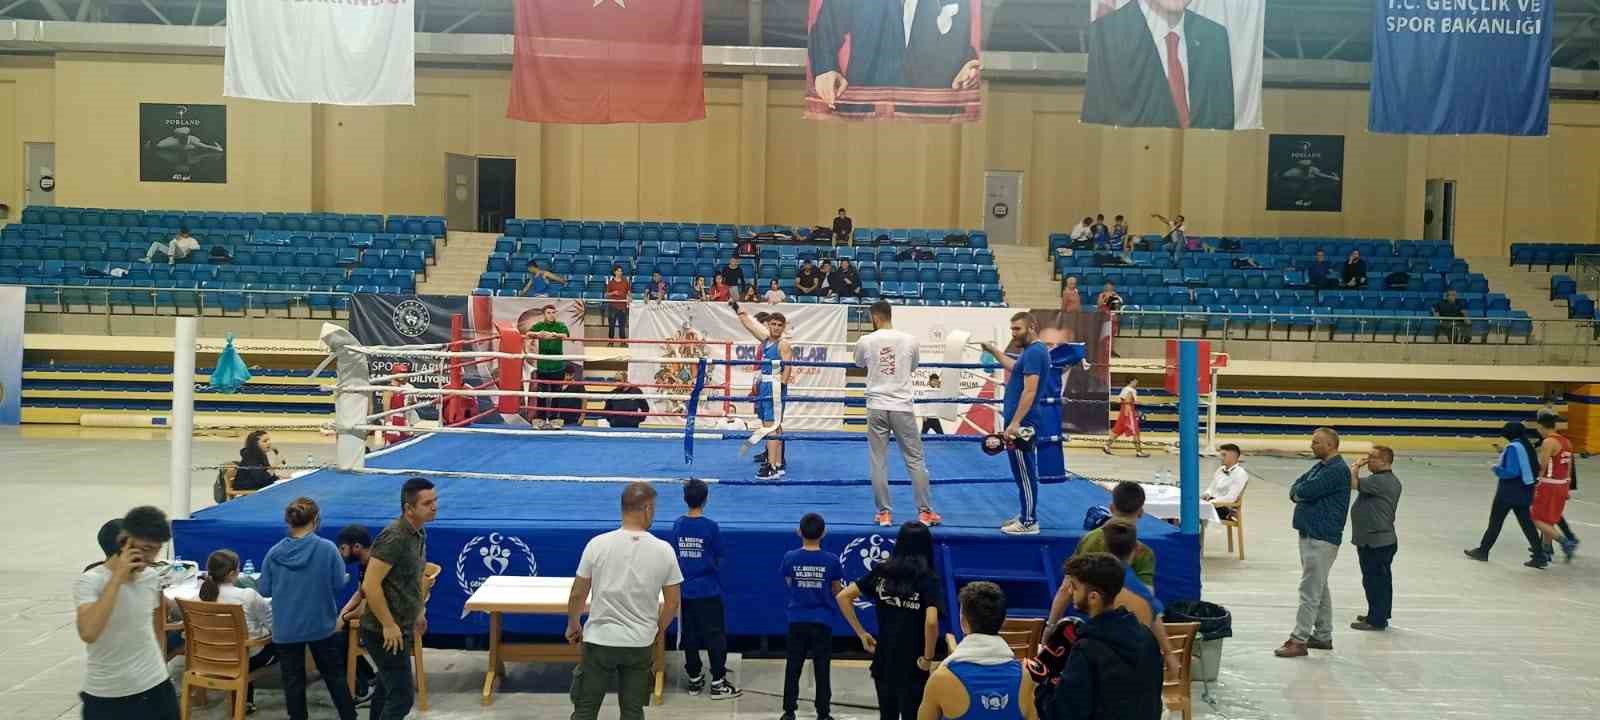 Bozüyük Belediyesi Eğitim ve Spor Kulübü 100. Yıl Boks Turnuvası’nda 7 derece elde etti